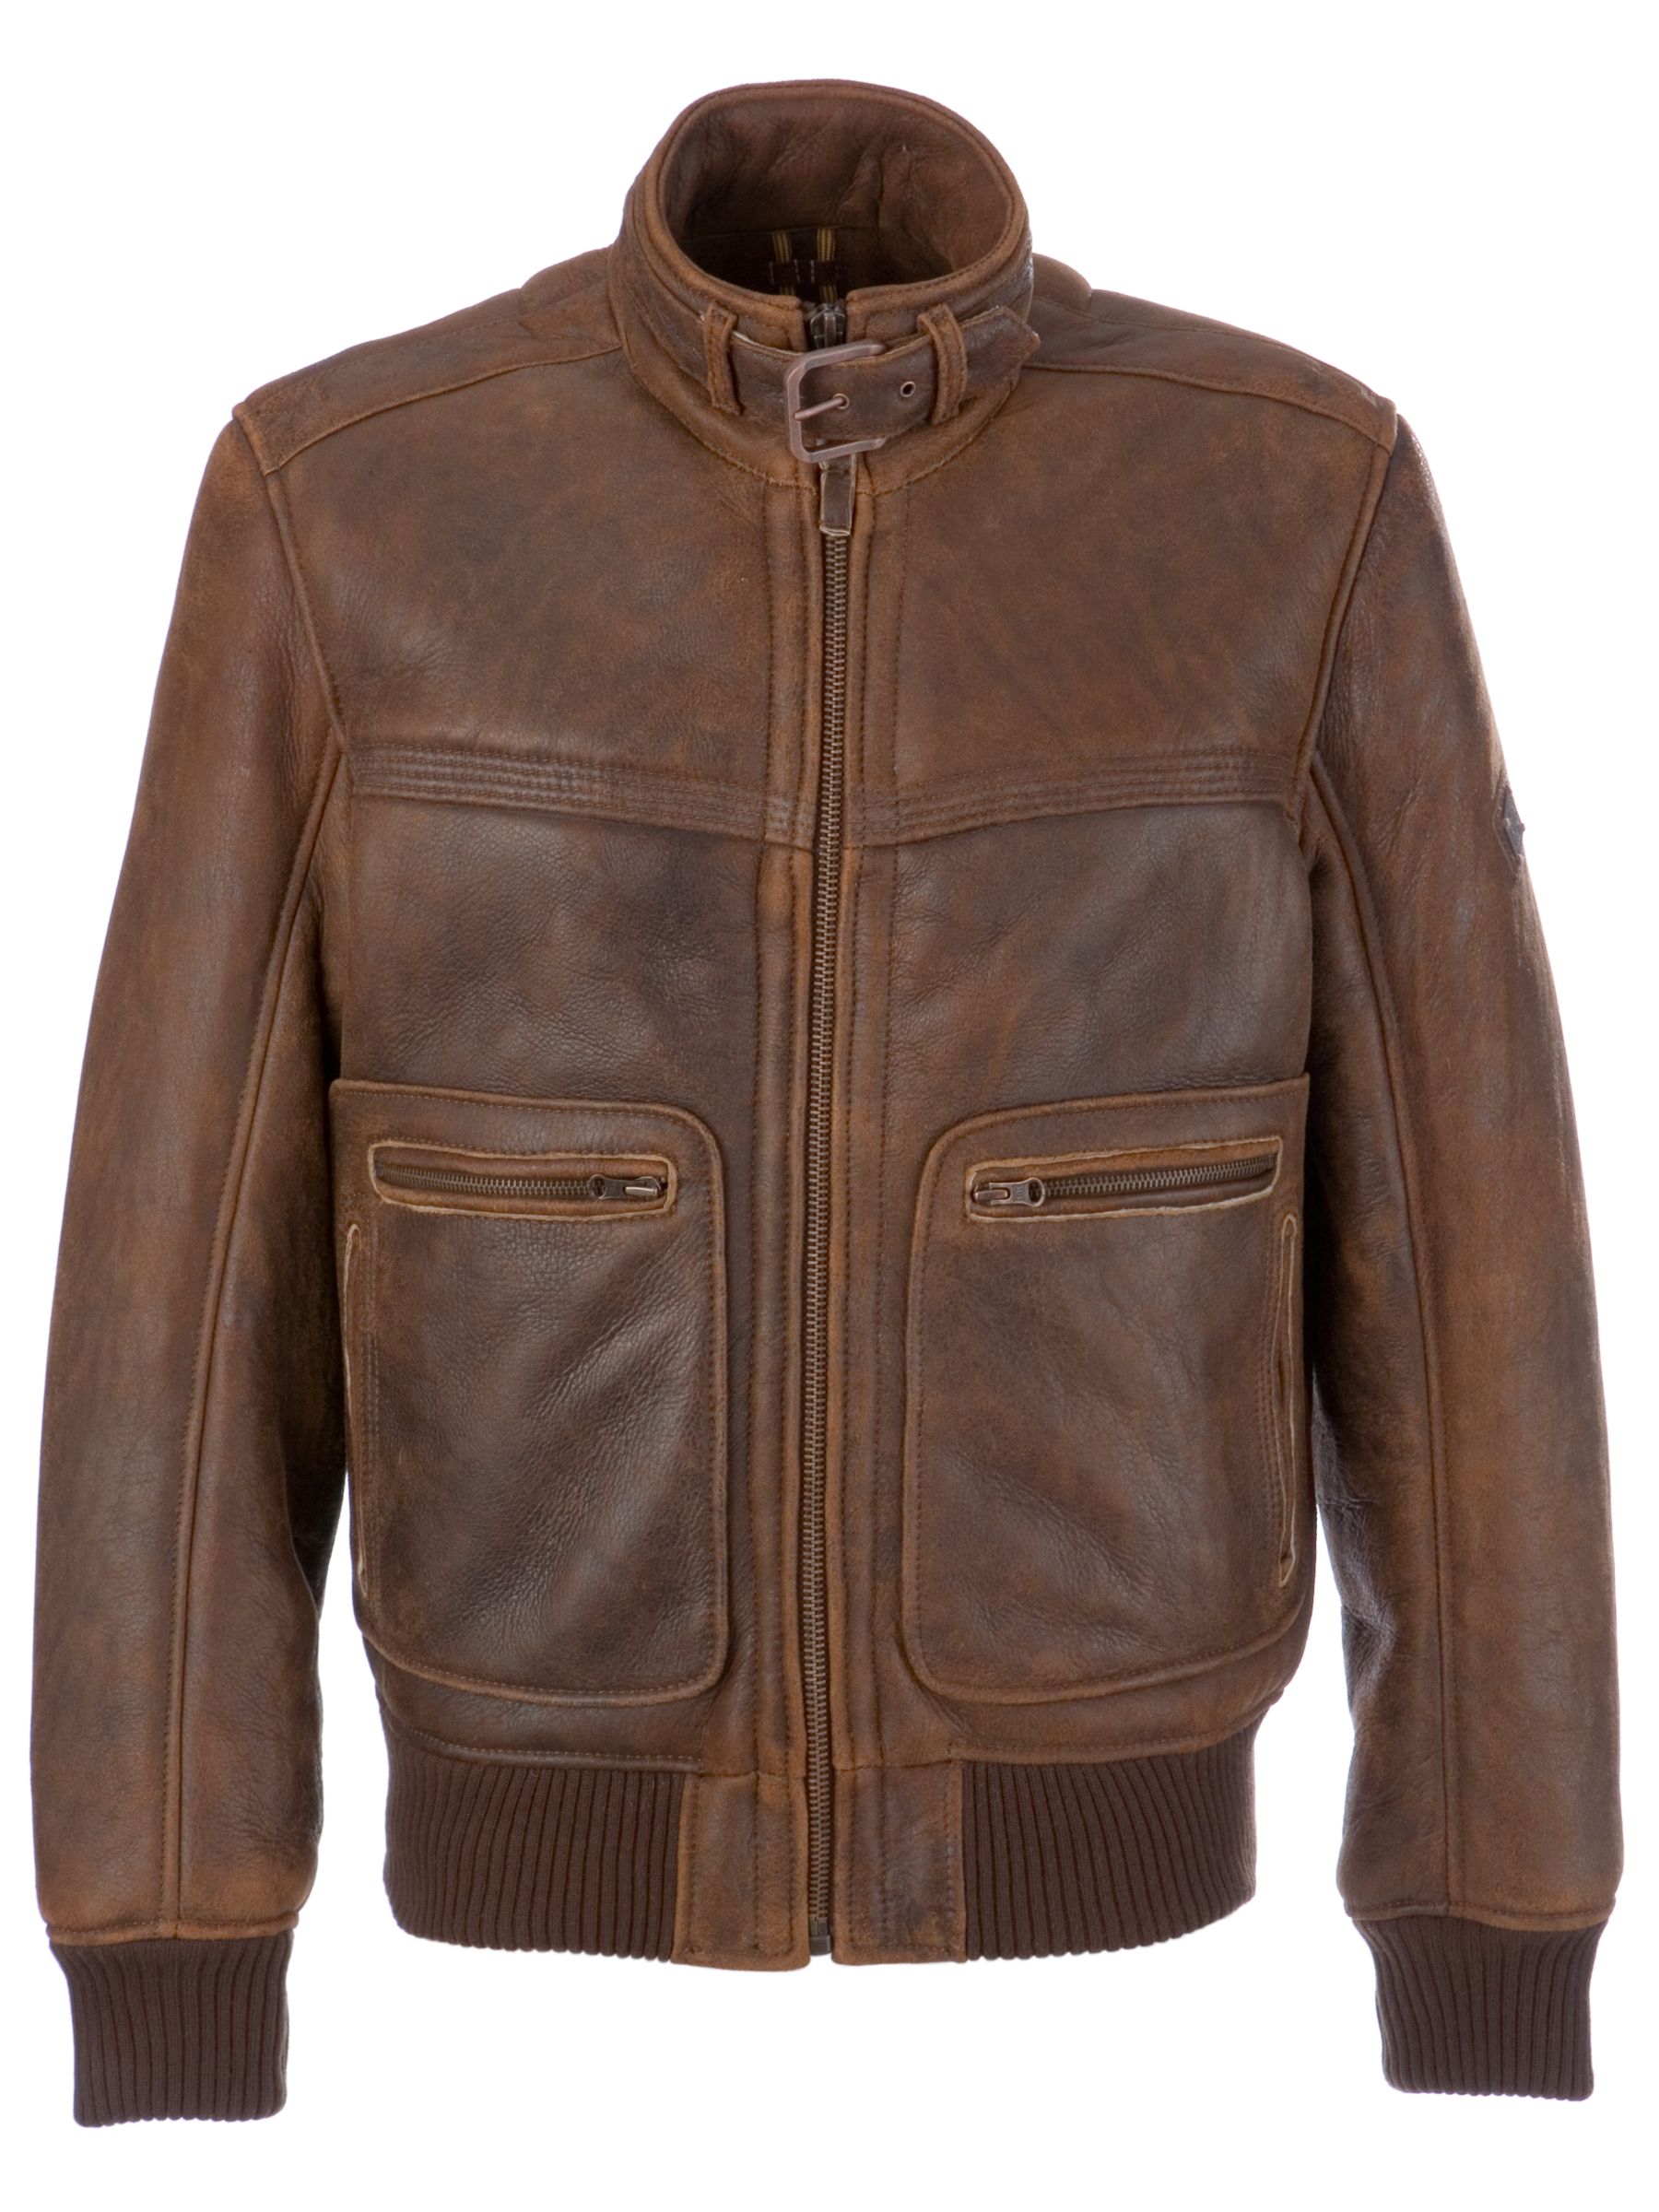 Timberland Shearling Jacket, Brown at JohnLewis